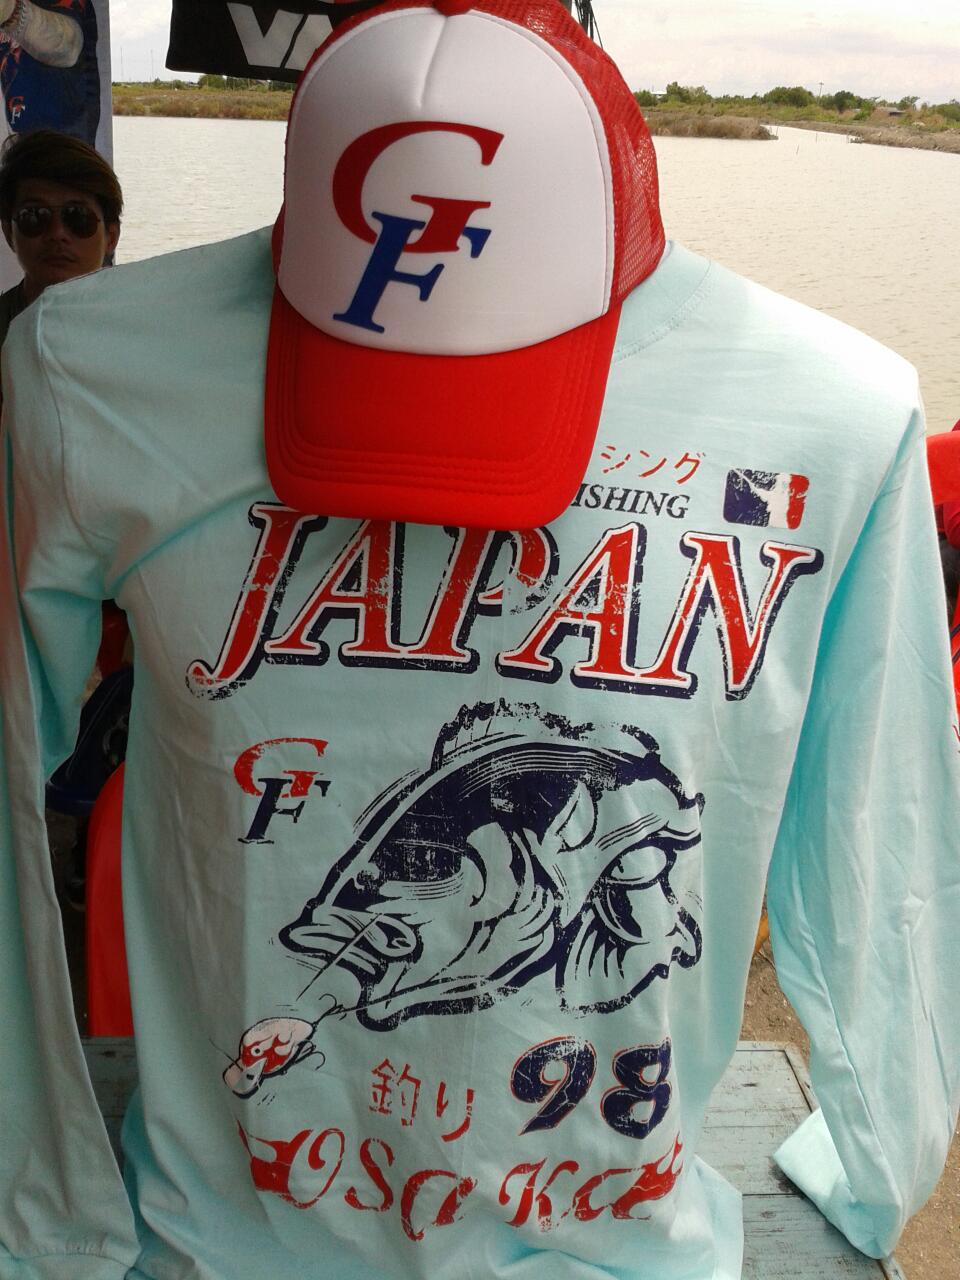 ภายในงานมี สินค้า GF มาจำหน่ายด้วย น่าสนับสนุนครับ ฝีมือคนไทย ผมเลยจัดมาทั้งเสื้อและหมวก :love: